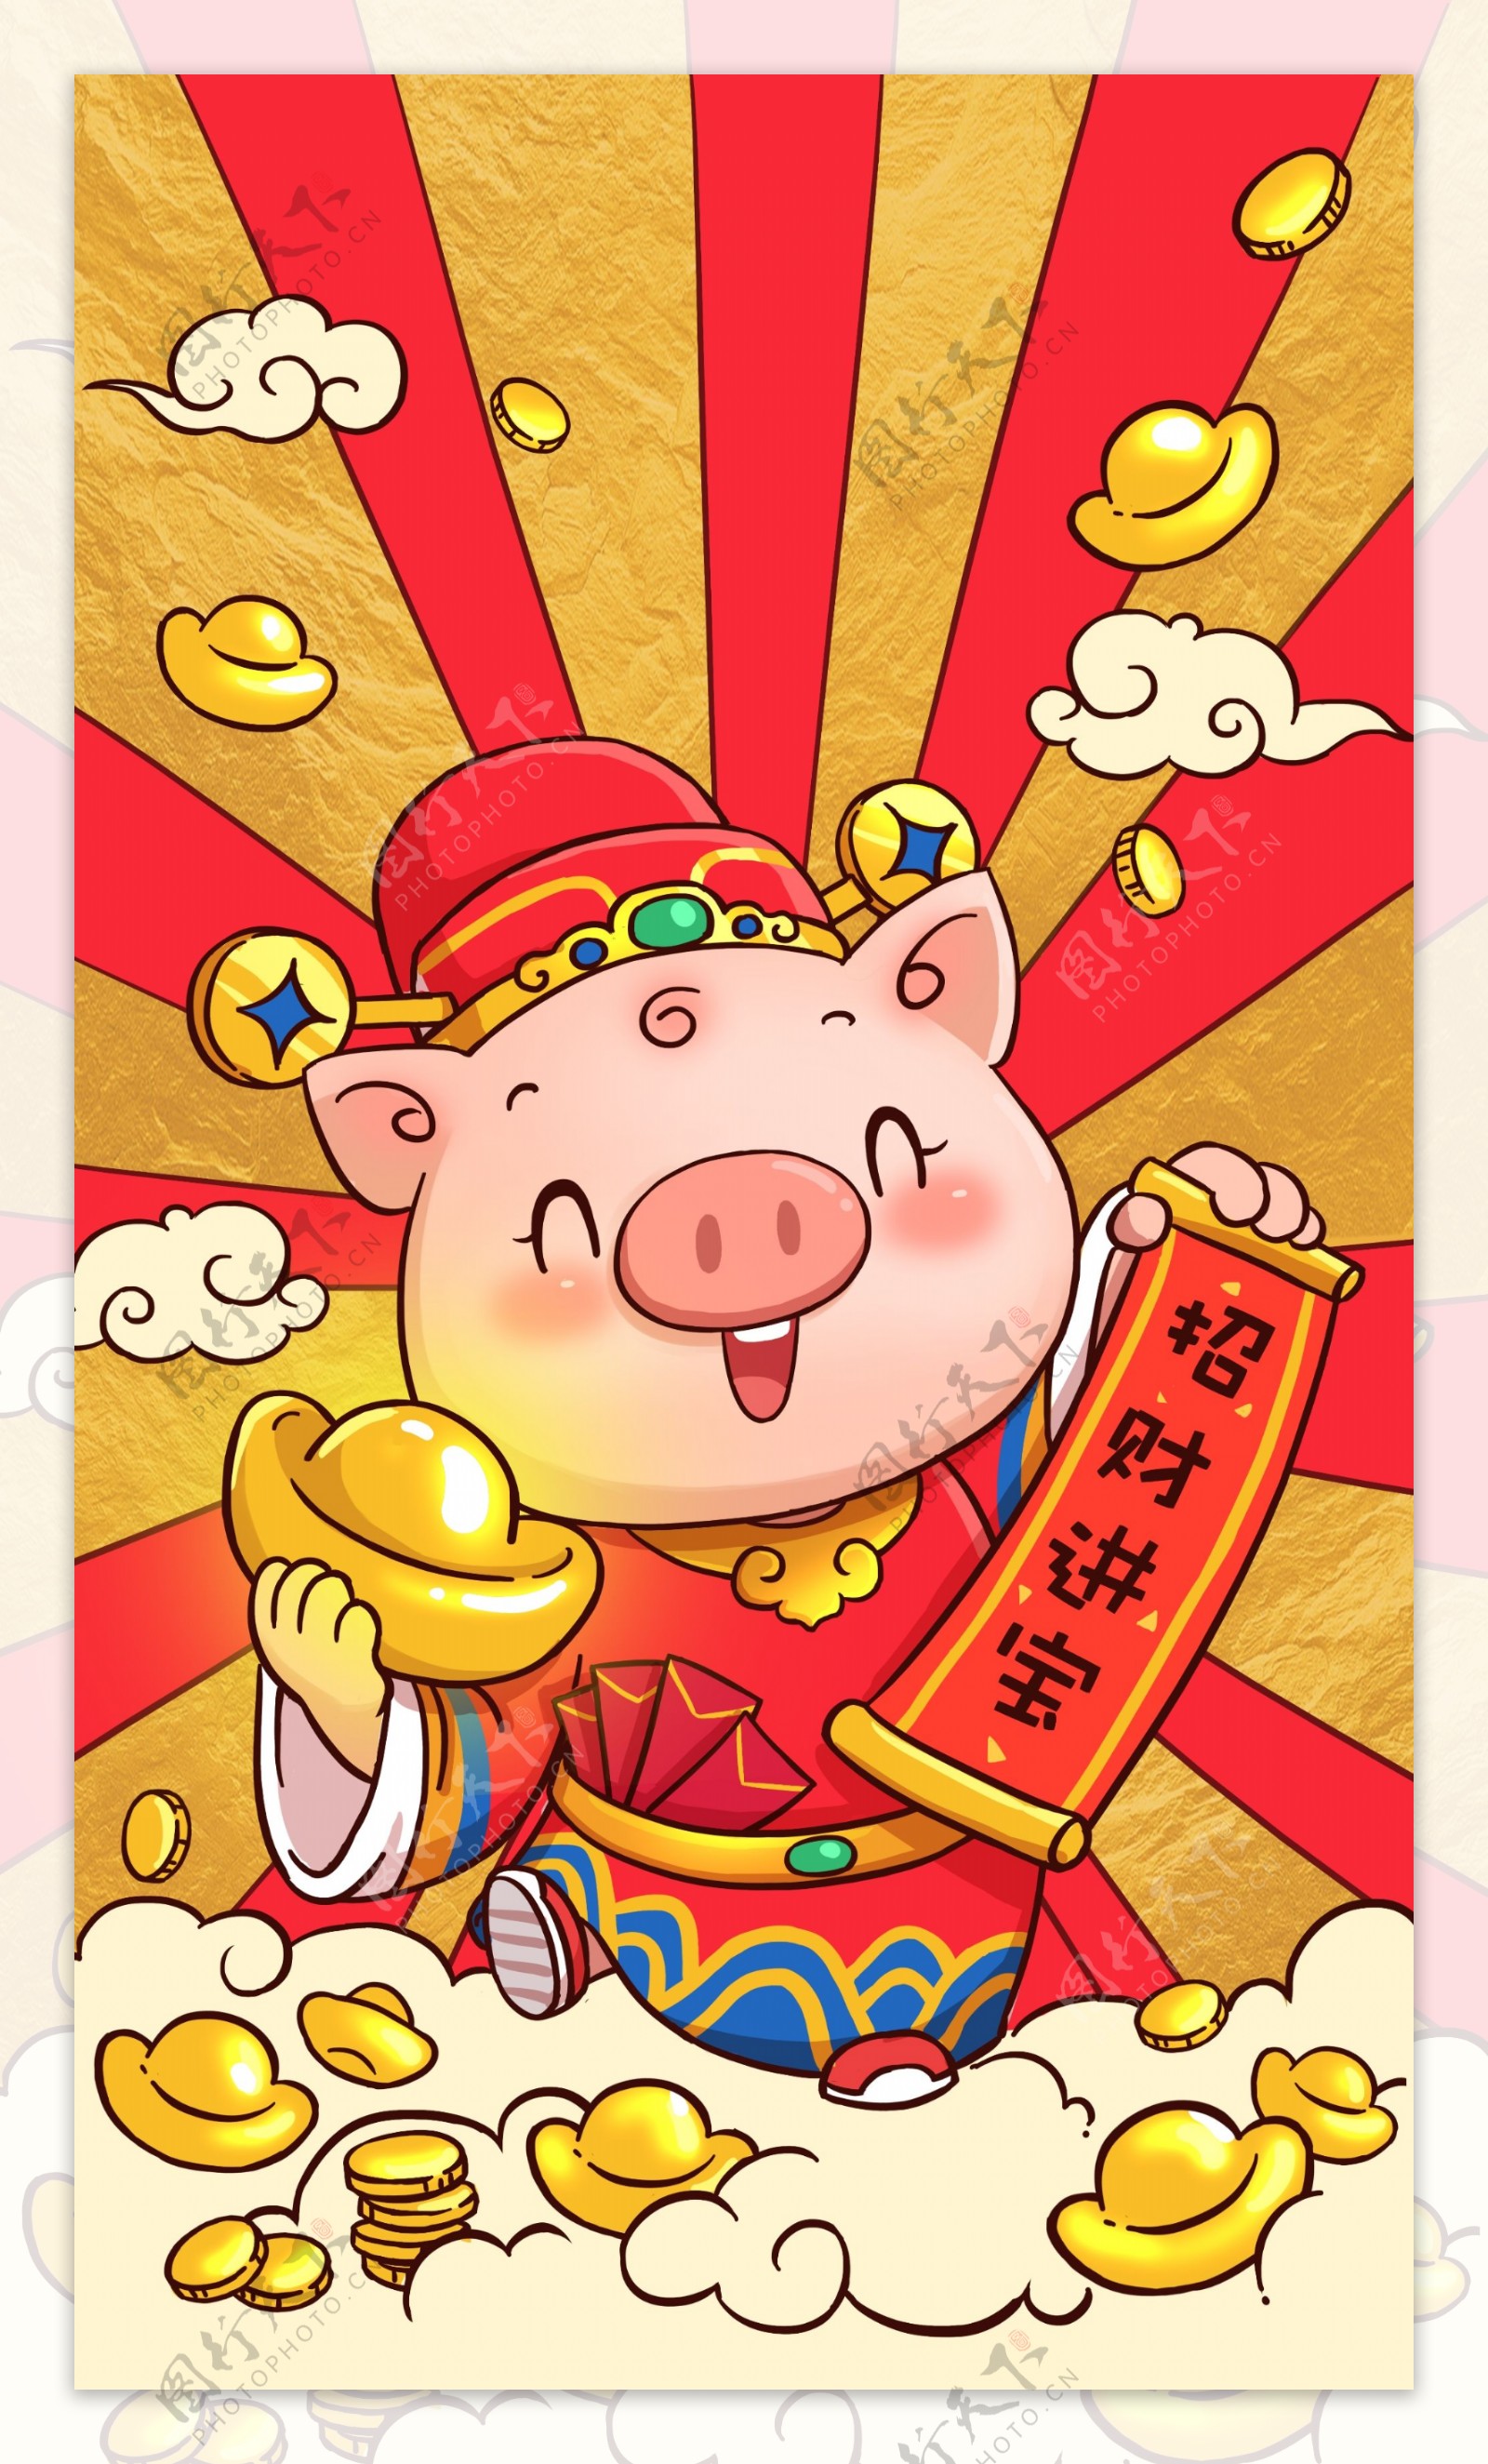 原创插画2019财神猪年吉祥物卡通